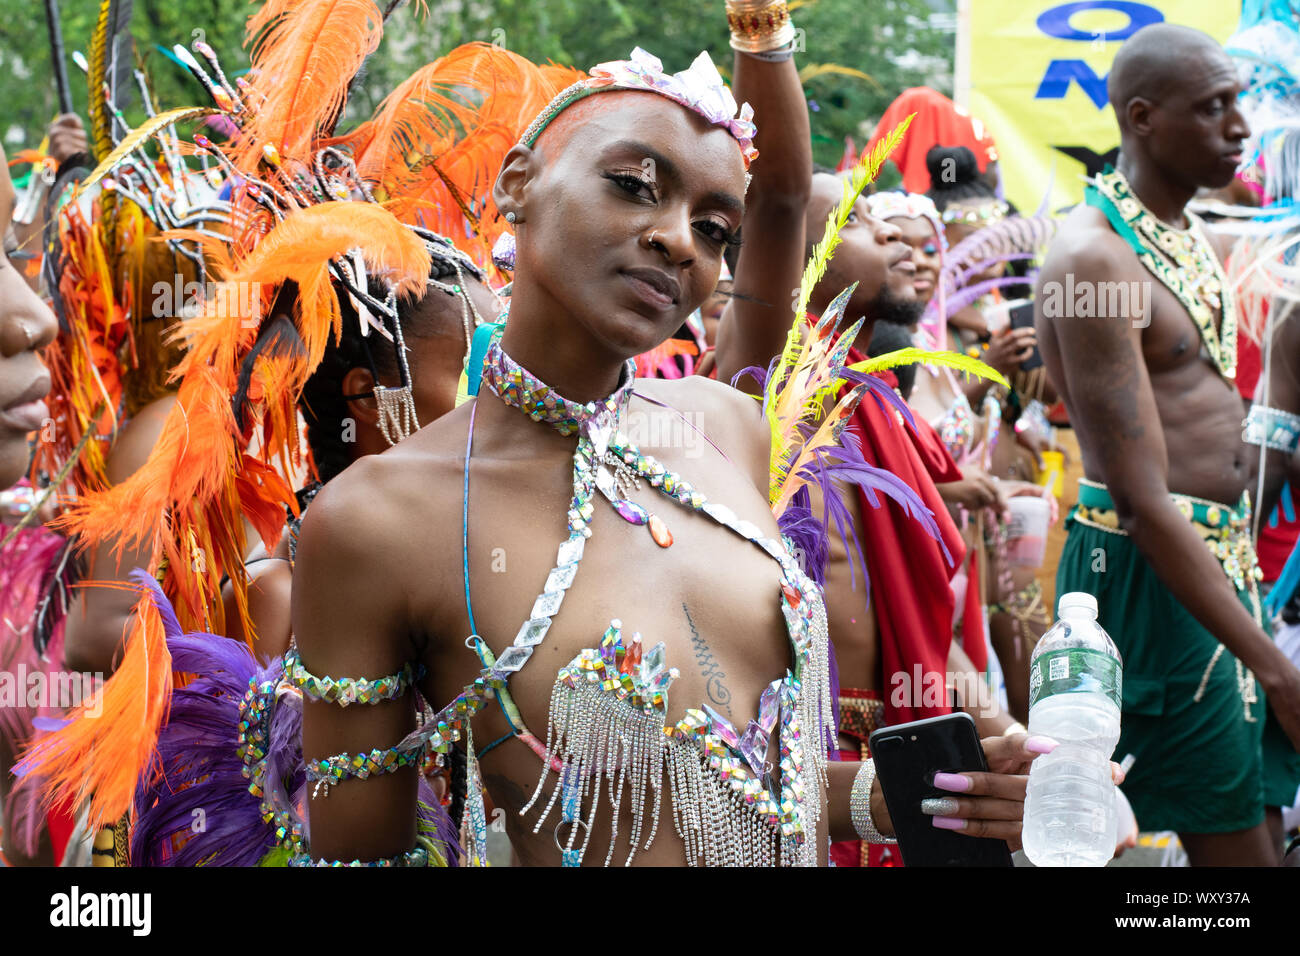 Stolzer Blick in die Kamera einer Frau aus Lateinamerika, die an der West Indian Day Parade teil nimmt. Sie ist erotisch mit einem Karnevalskostüm bek Stock Photo